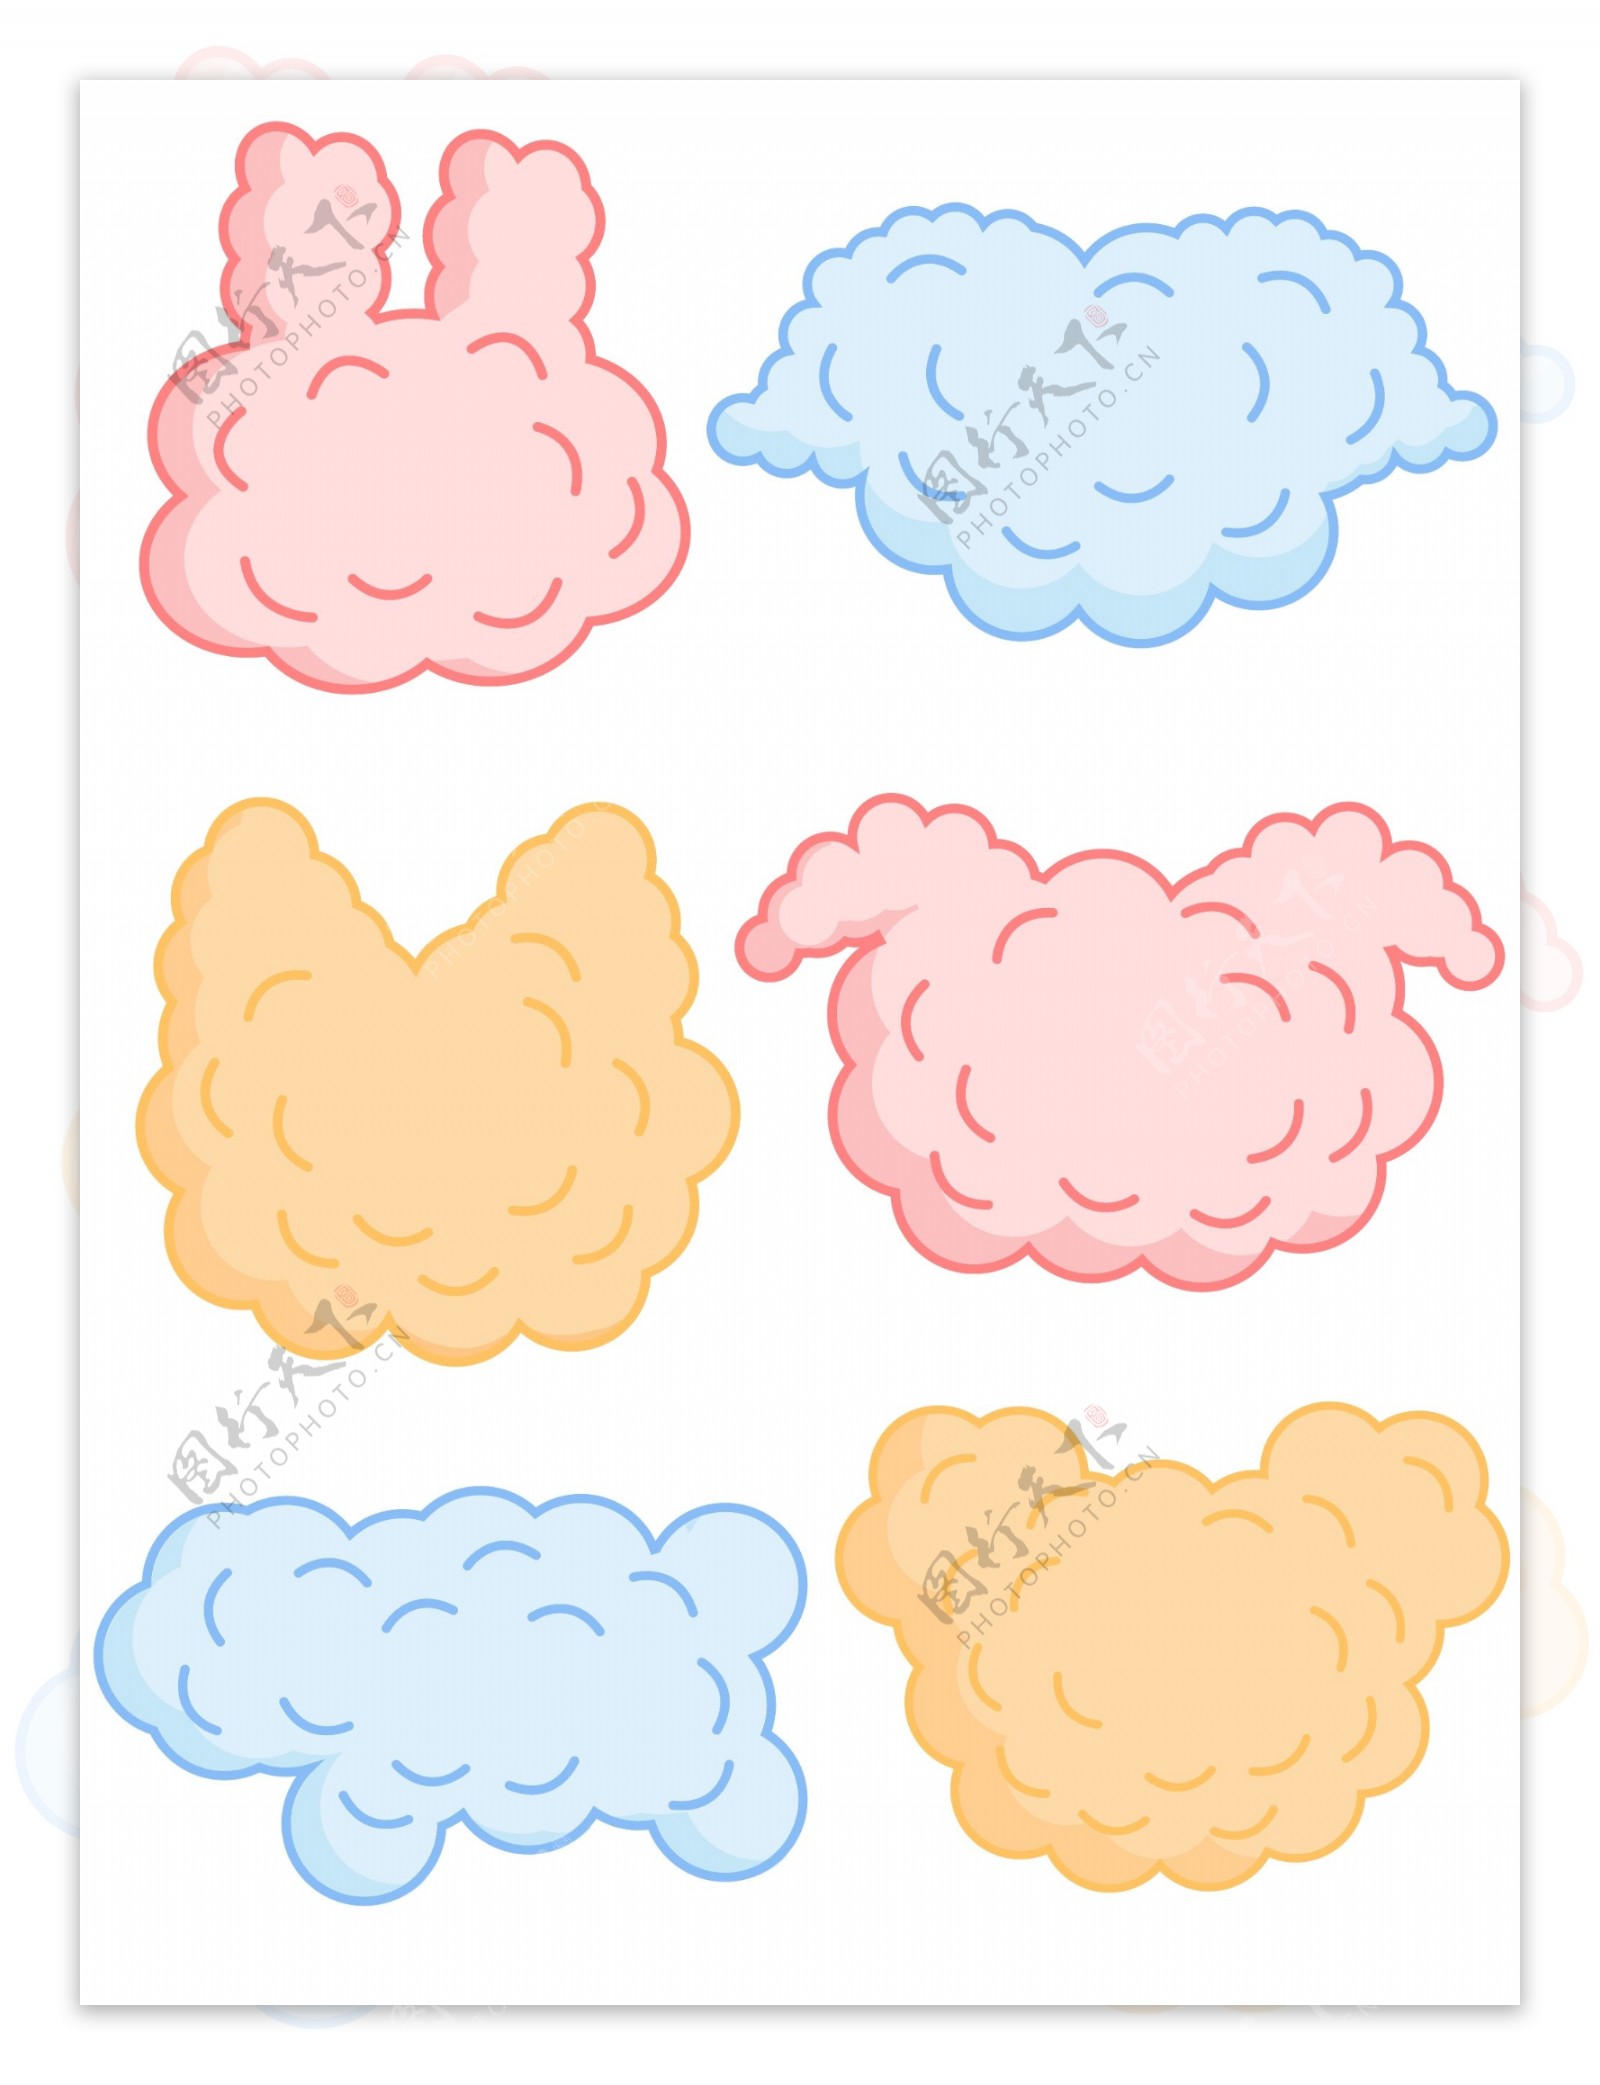 简约可爱小动物爆炸云对话边框素材元素